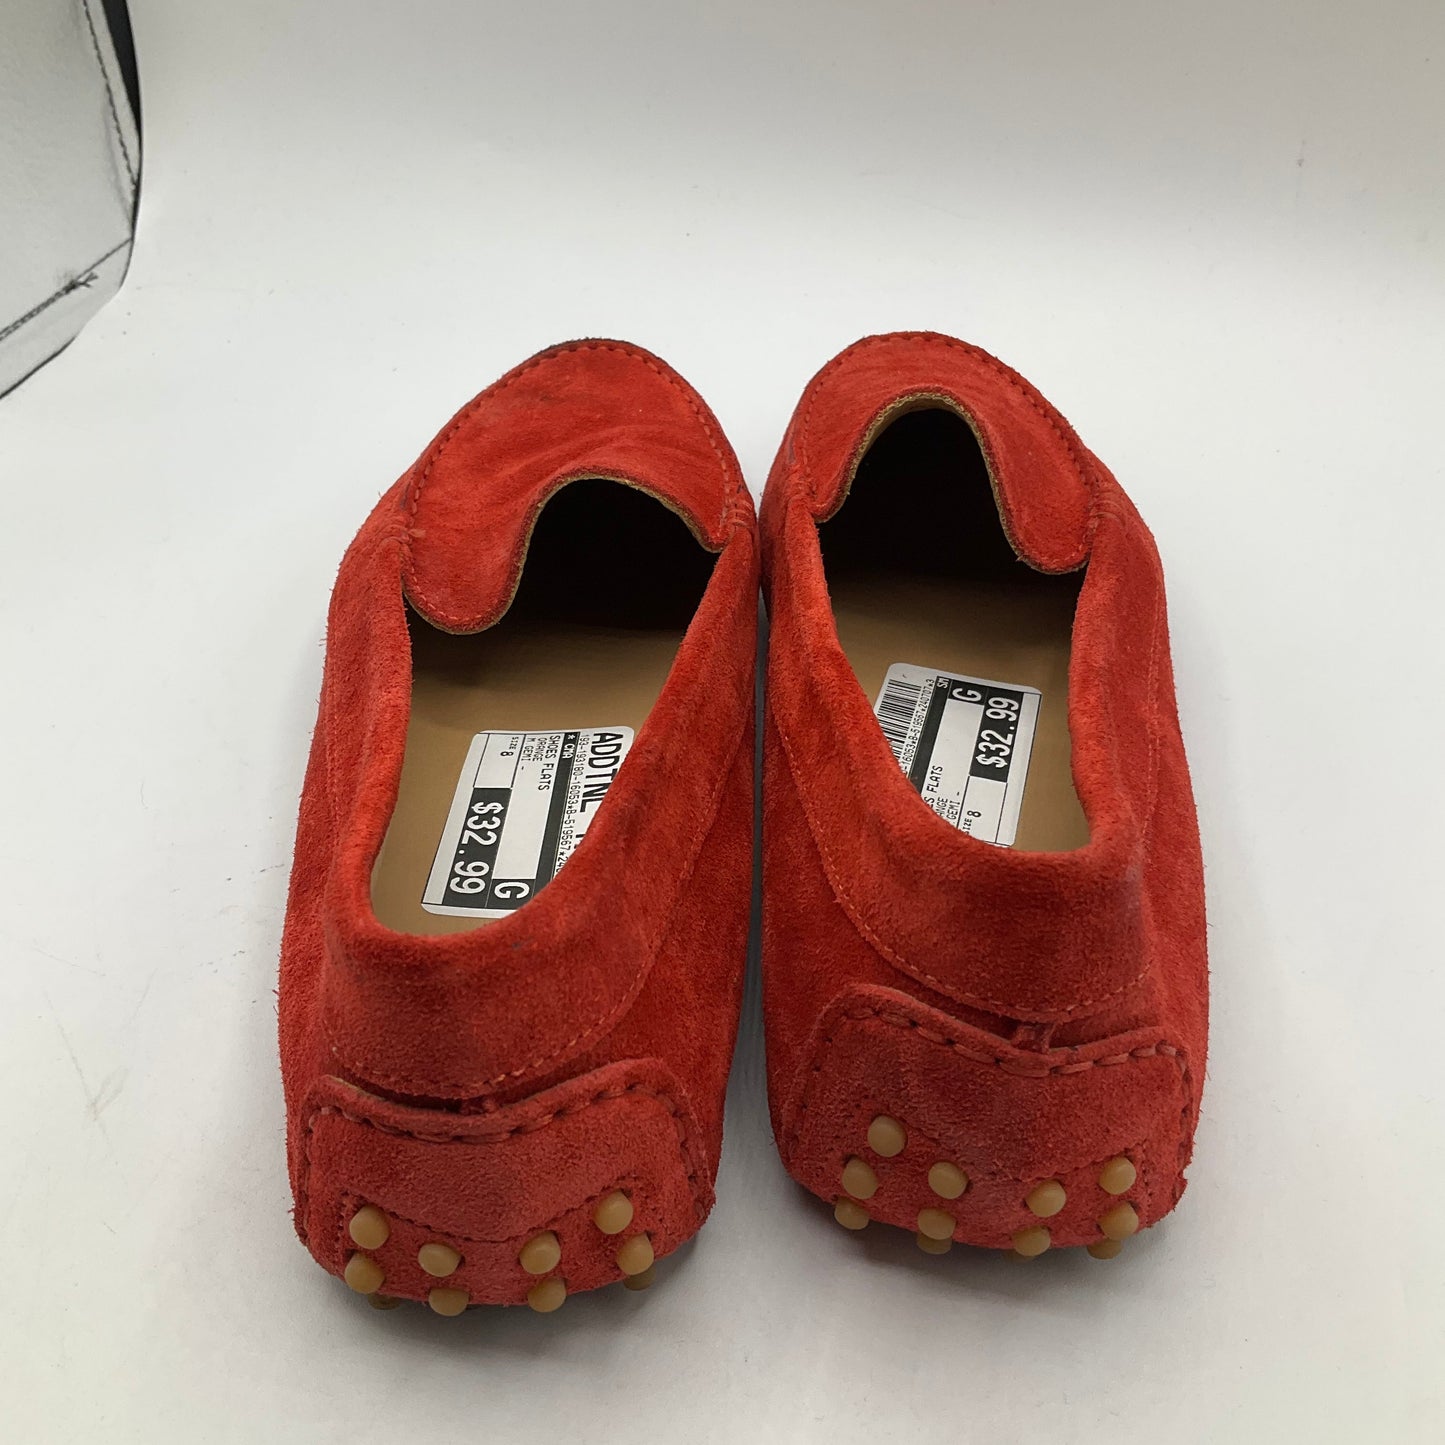 Orange Shoes Flats Cma, Size 8